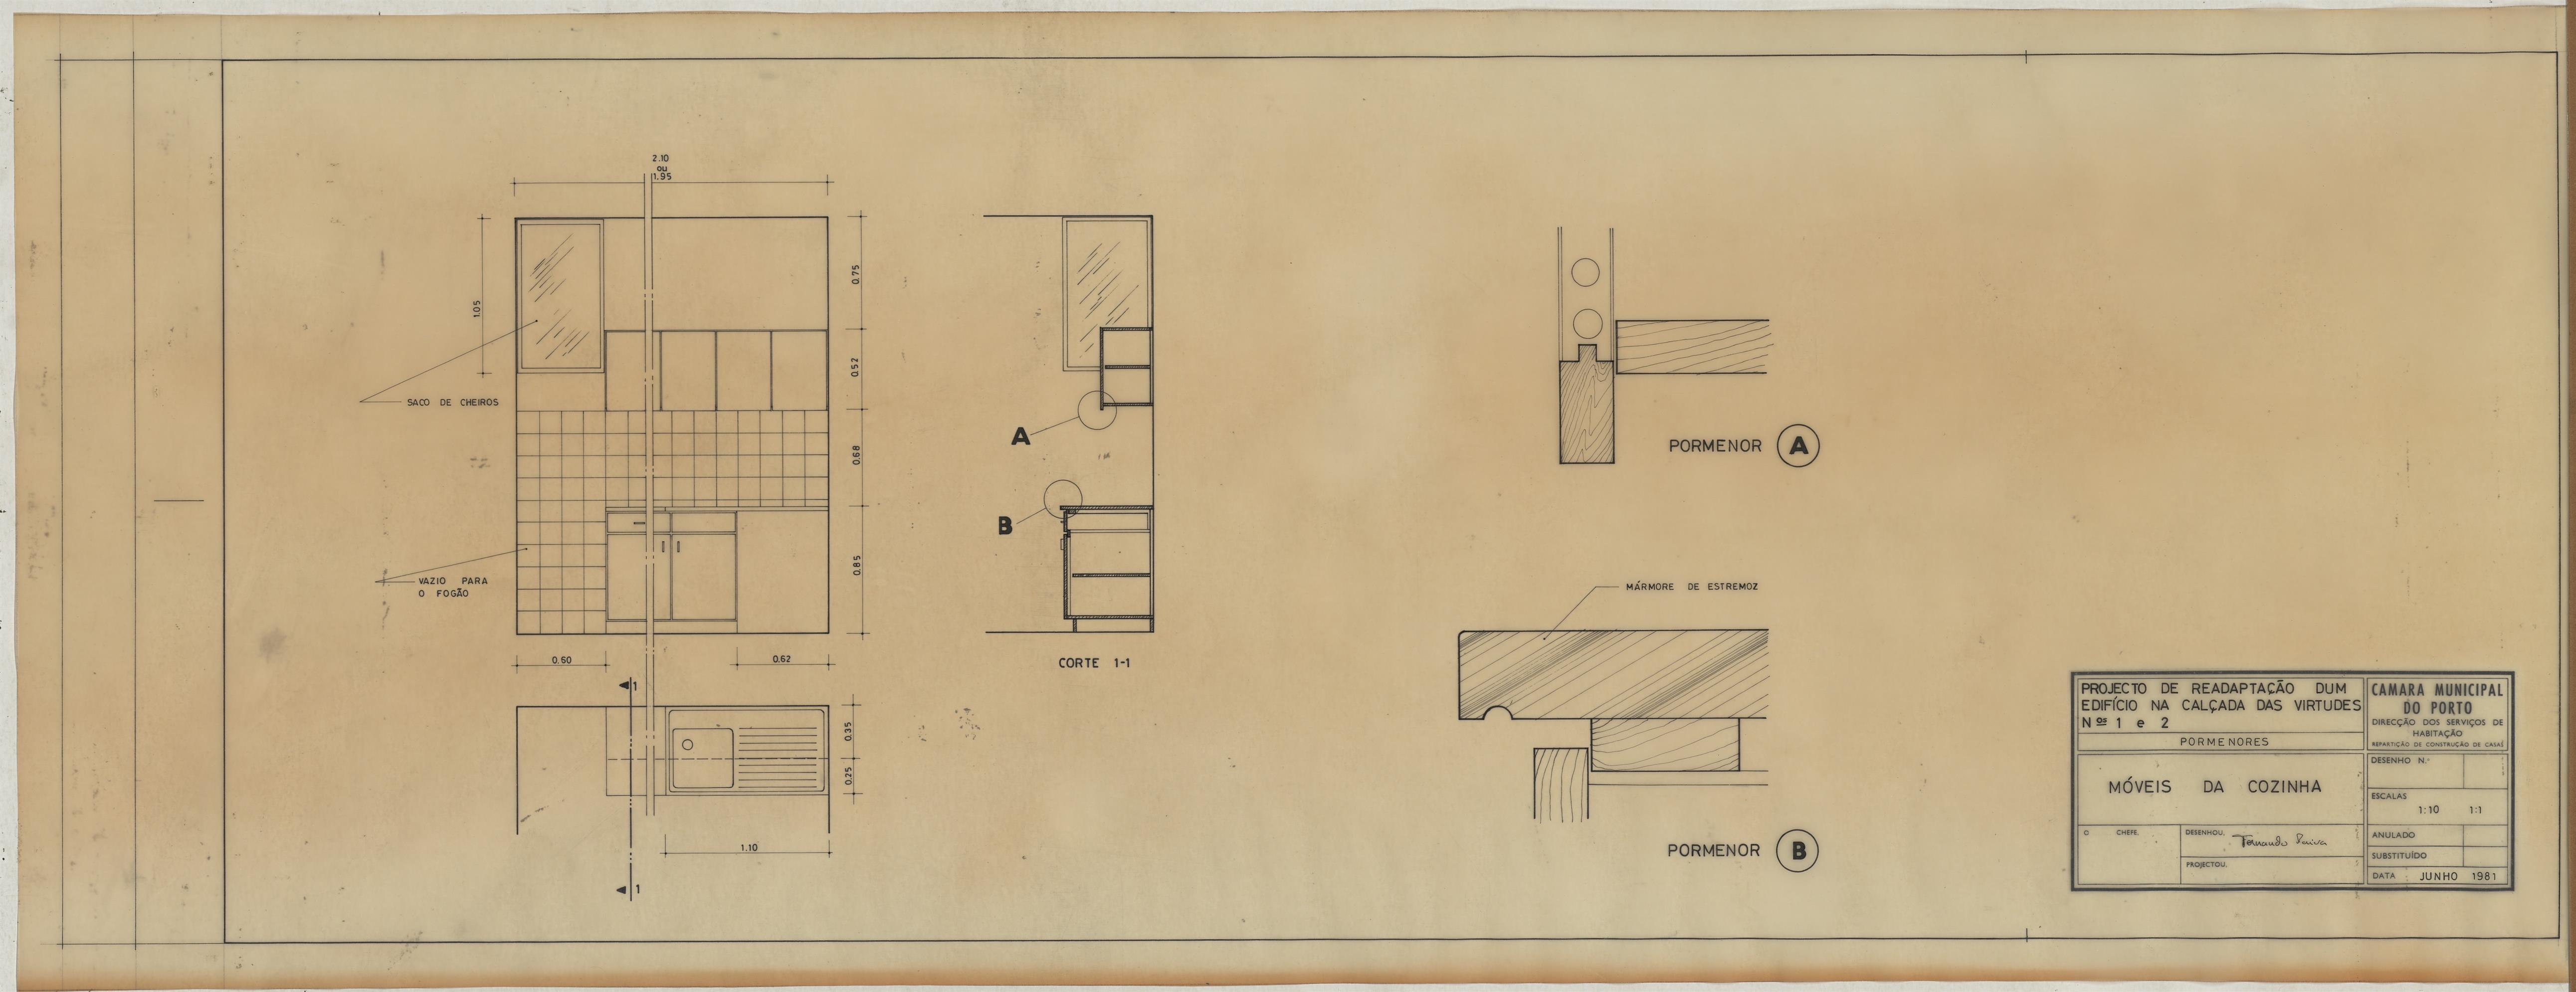 Projeto de readaptação de um edifício na Calçada das Virtudes n.º 1 e n.º 2 : arquitetura : pormenores : mobiliário